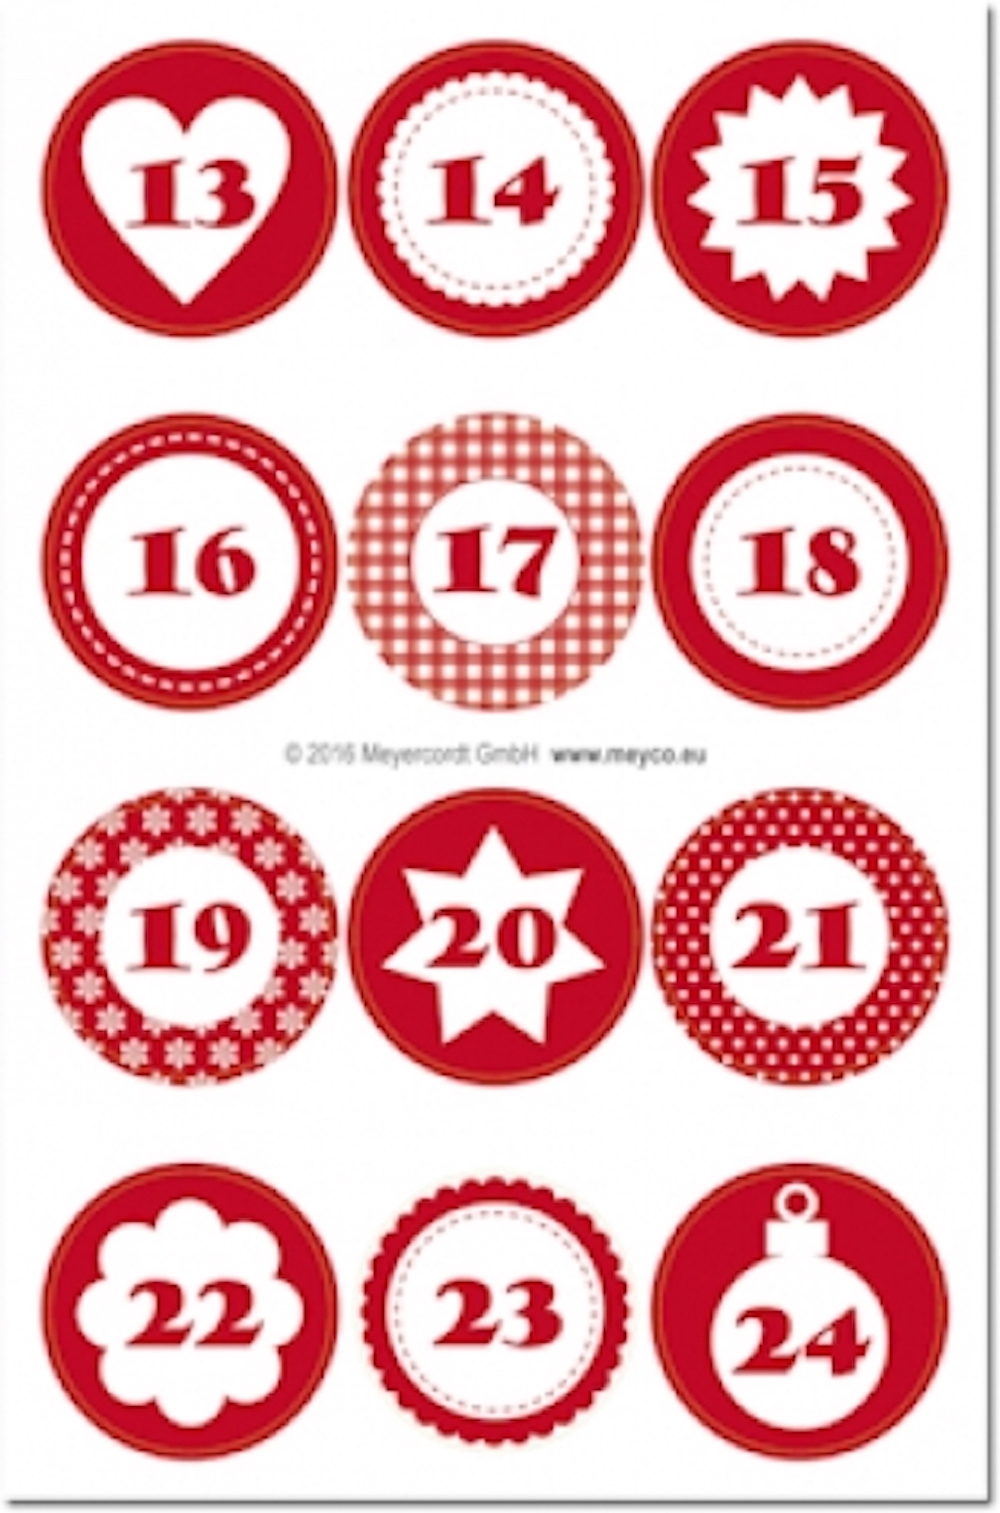 Adventskalender Zahlen-Sticker 1 - 24 rund ø 4cm 